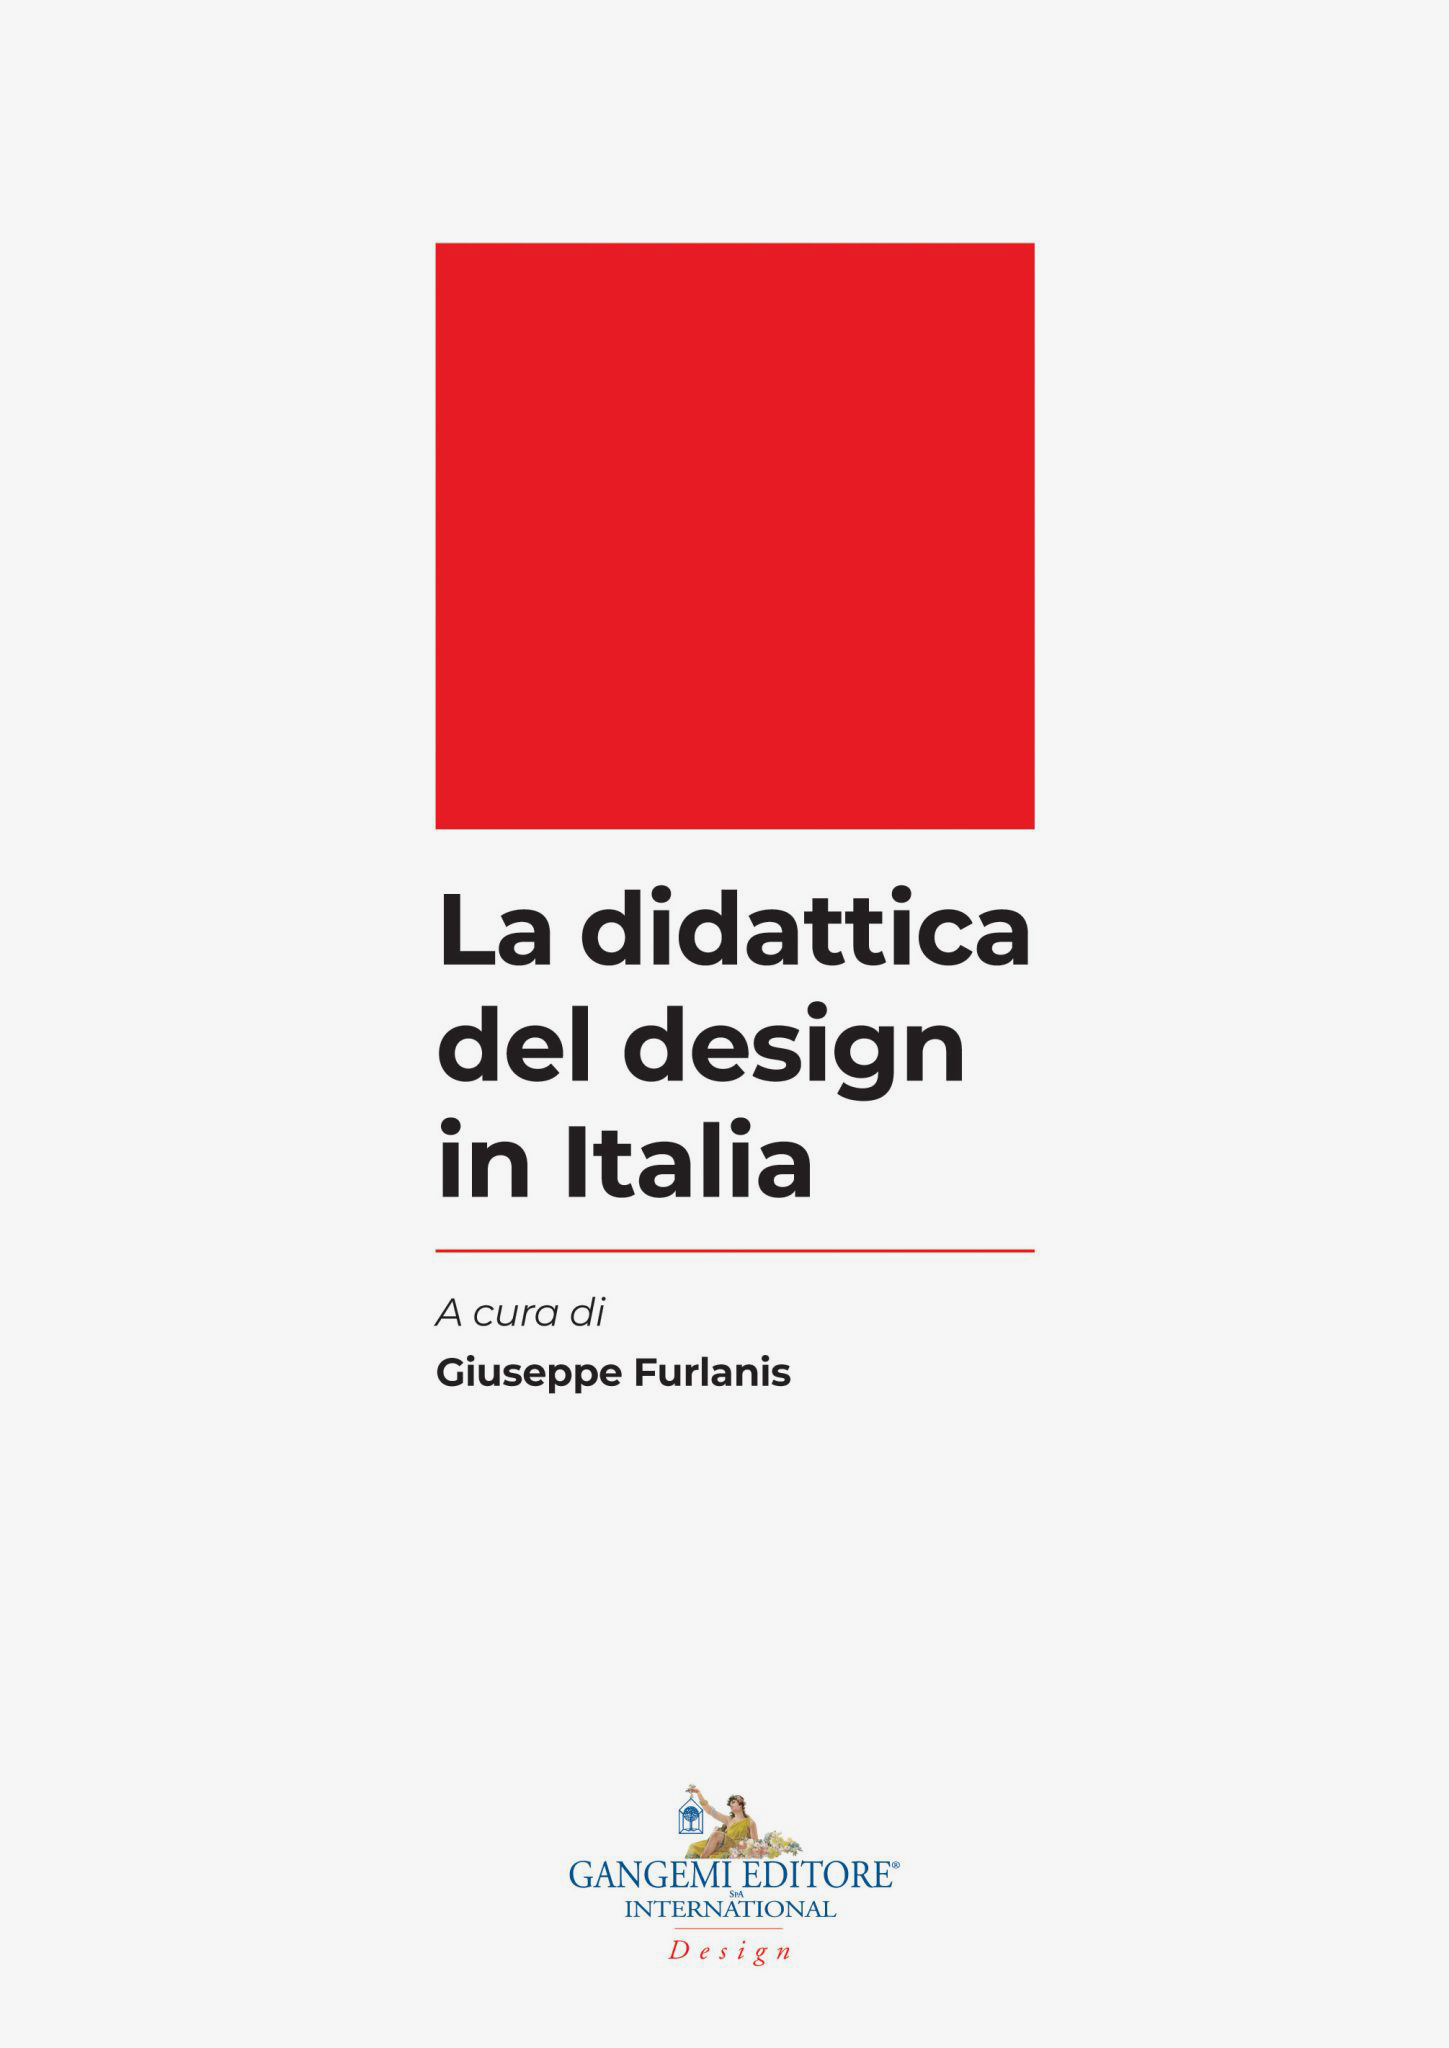 Copertina del libro "La didattica del design in Italia" a cura di Giuseppe Furlanis